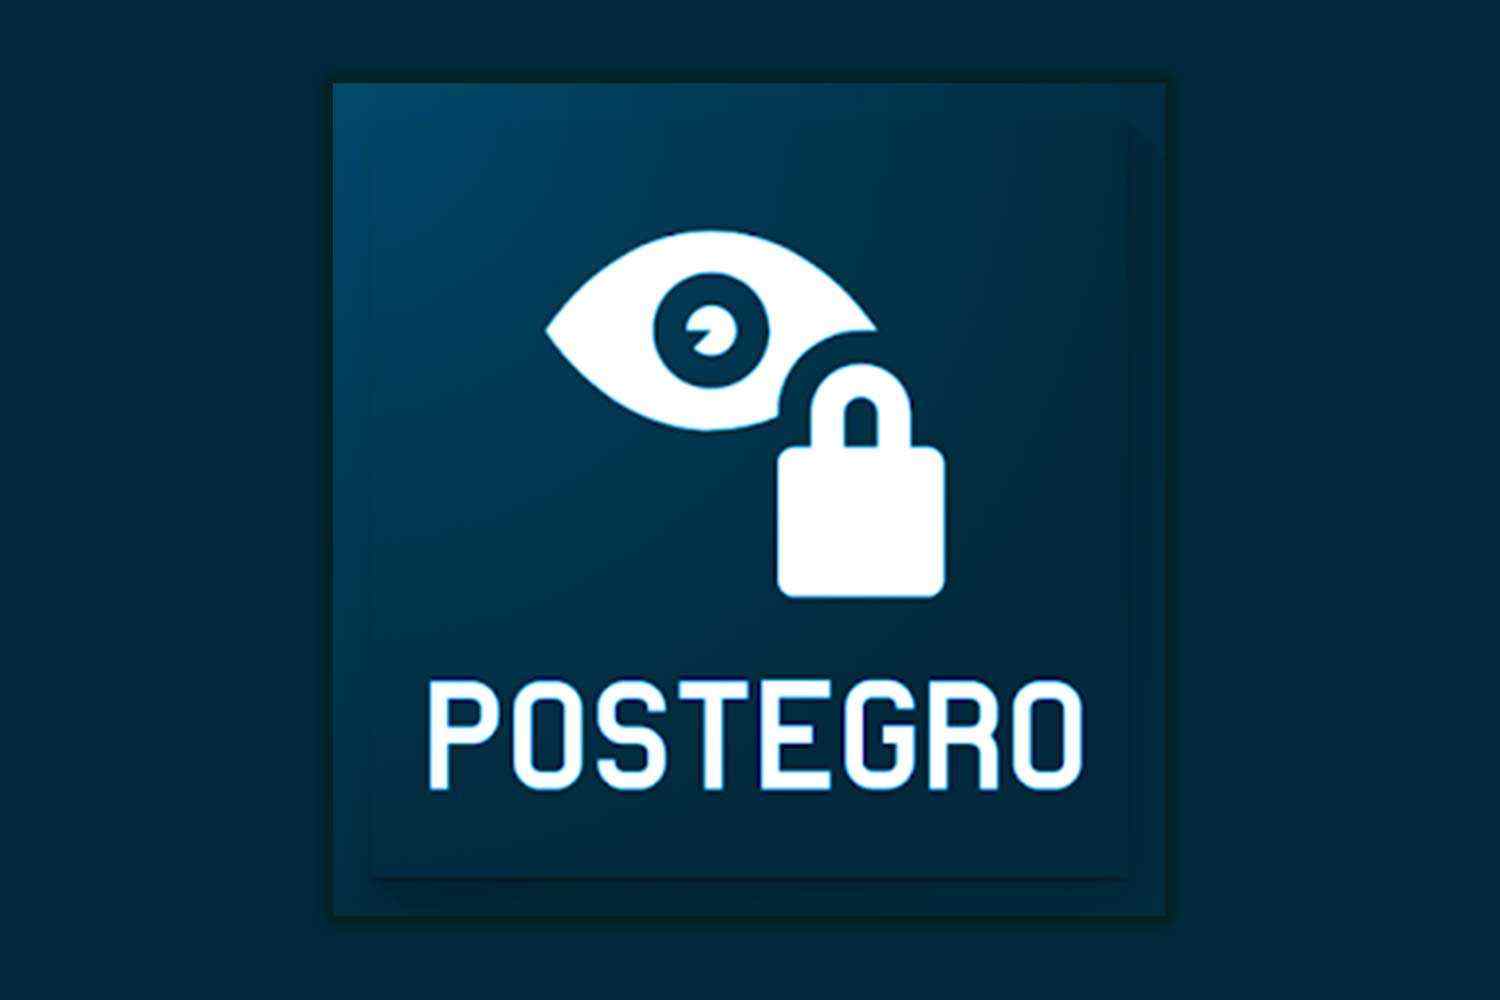 Web Postegro xyz – Güvenilir mi? (Şikayet)